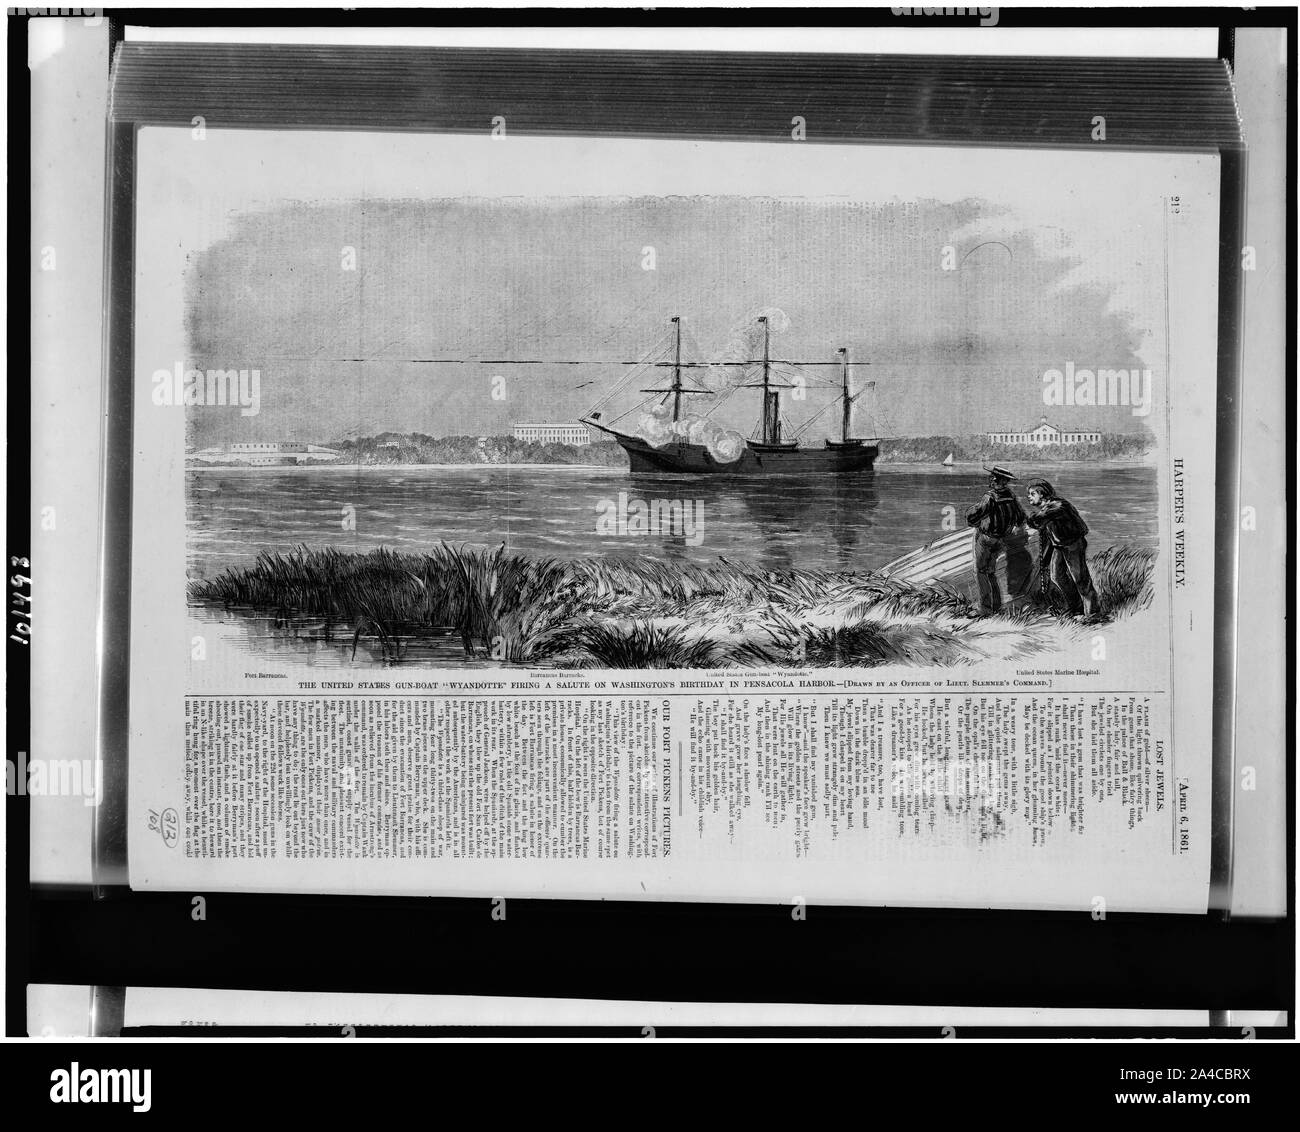 Die Vereinigten Staaten gun-boot Wyandotte feuern ein Gruß auf Washingtons Geburtstag in Pensacola Hafen/gezeichnet von einem Offizier von lieut. Slemmer der Befehl. Stockfoto